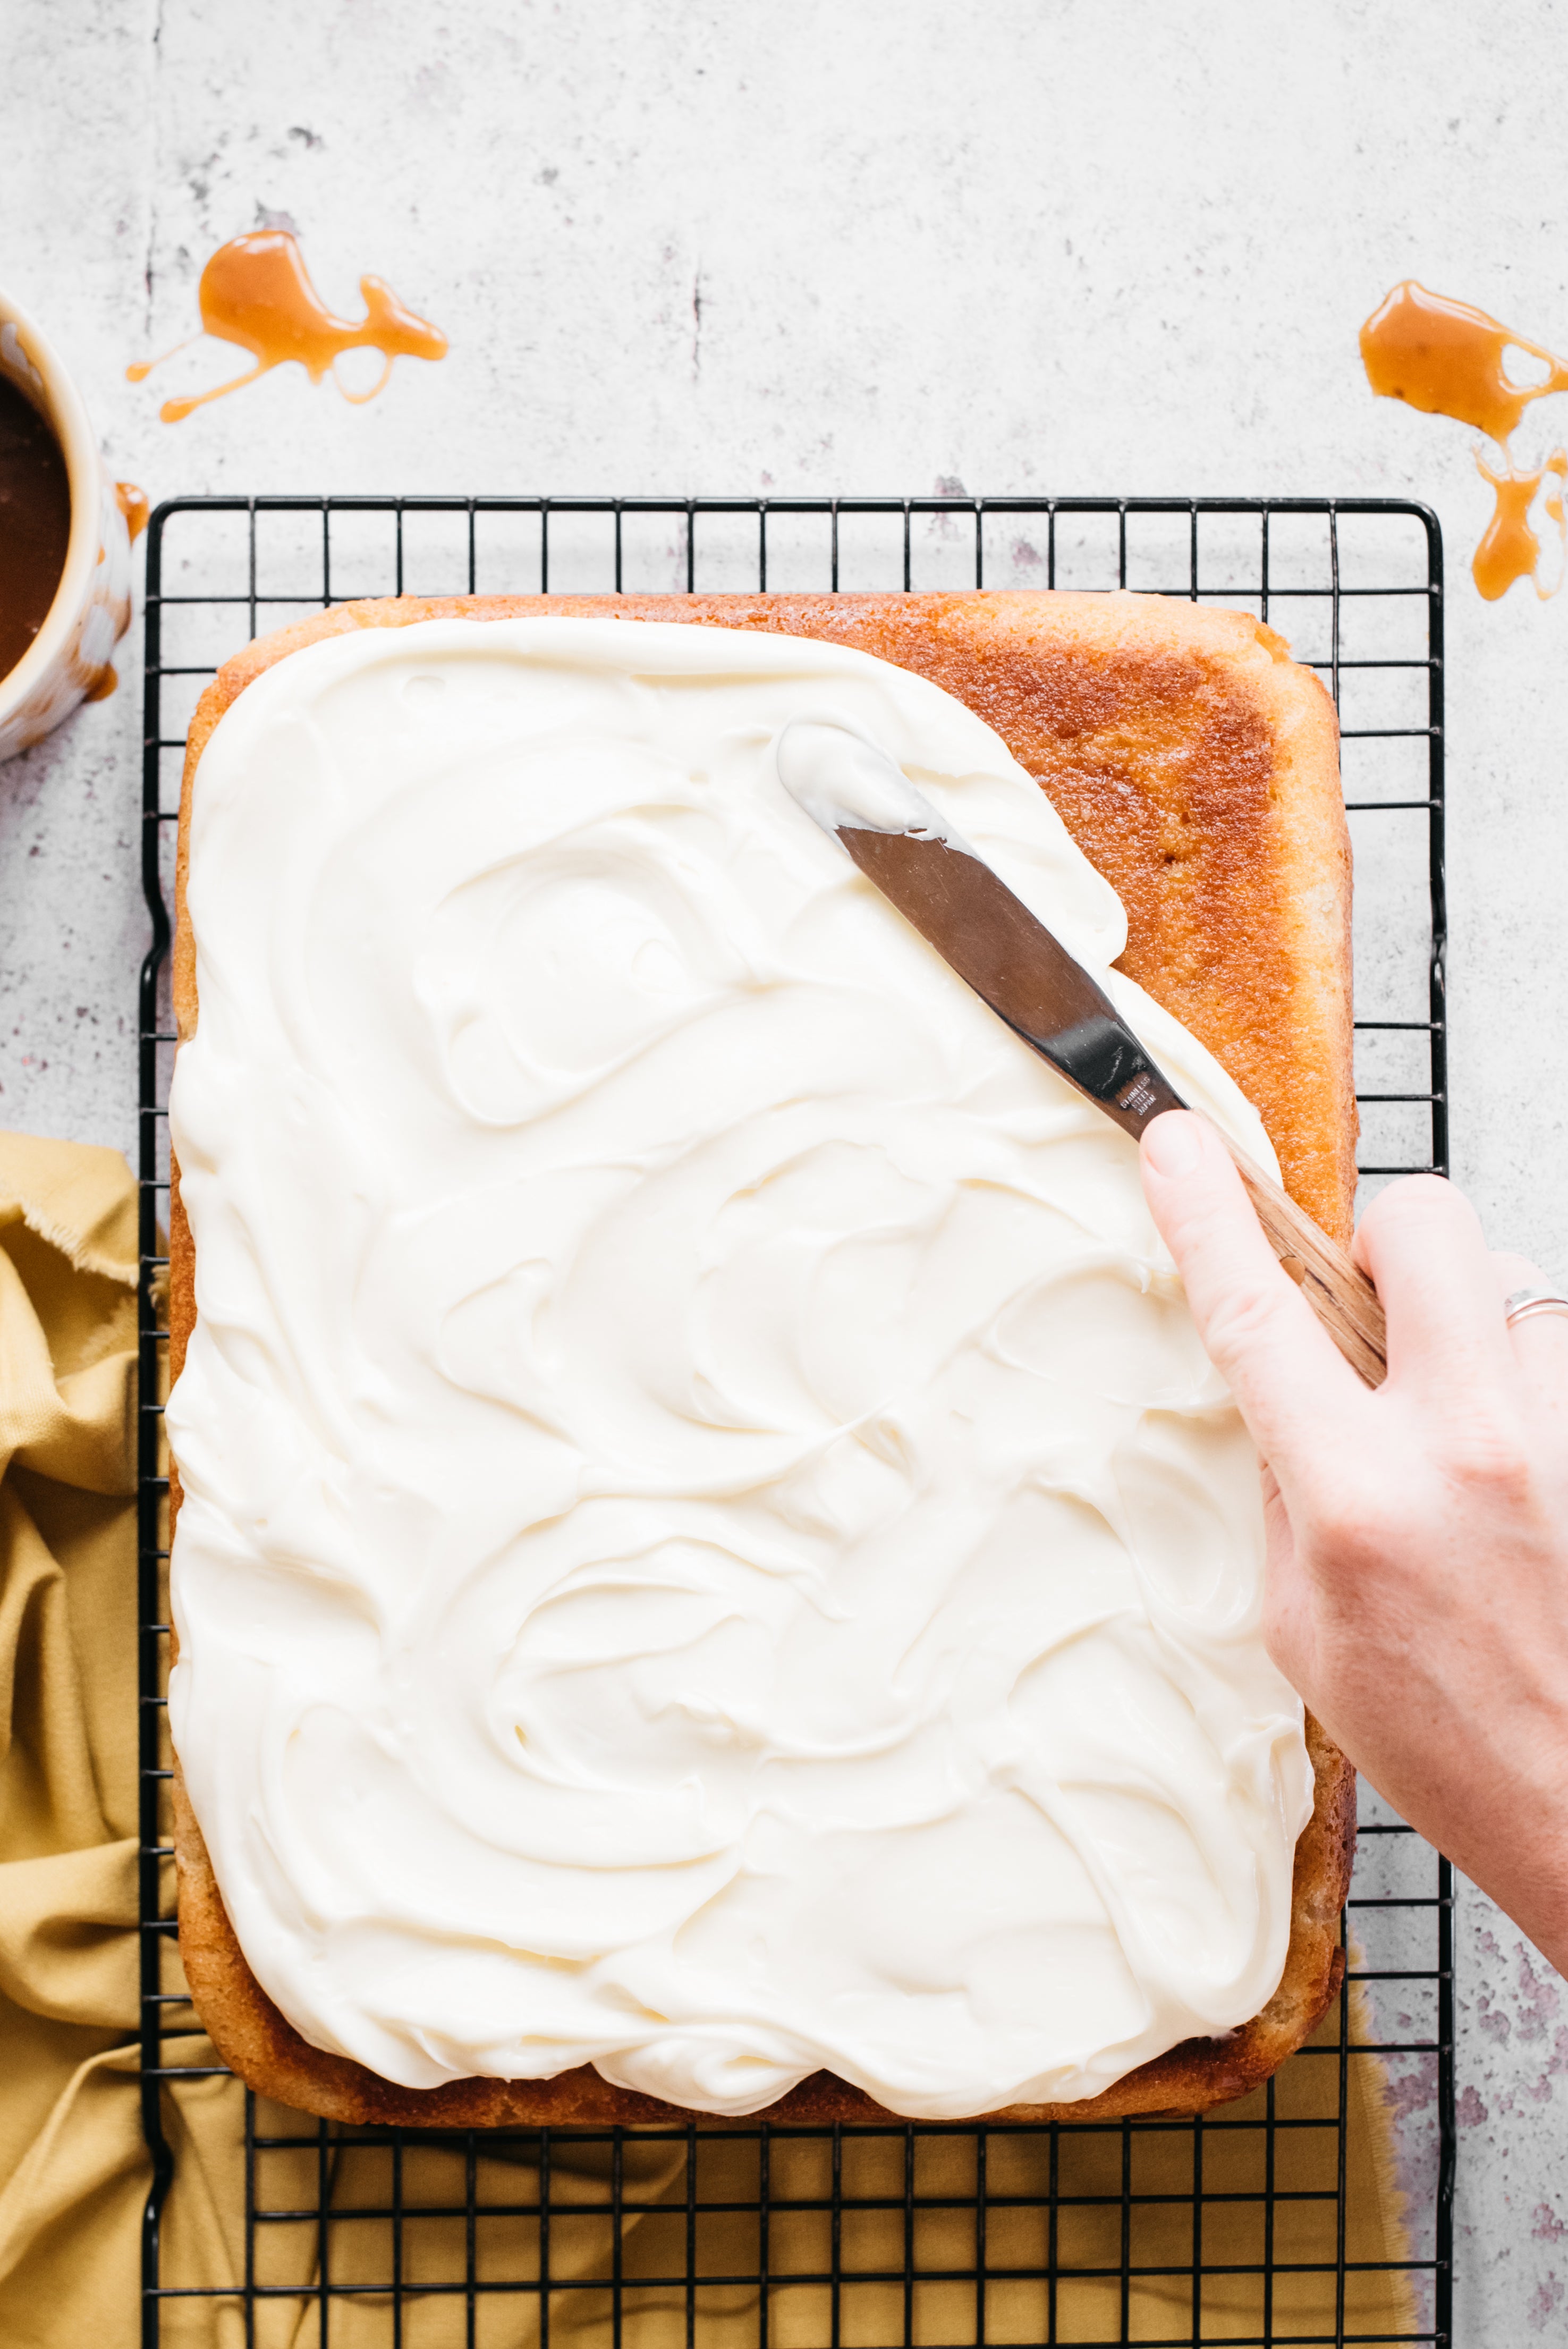 Hand spreading buttercream on cake